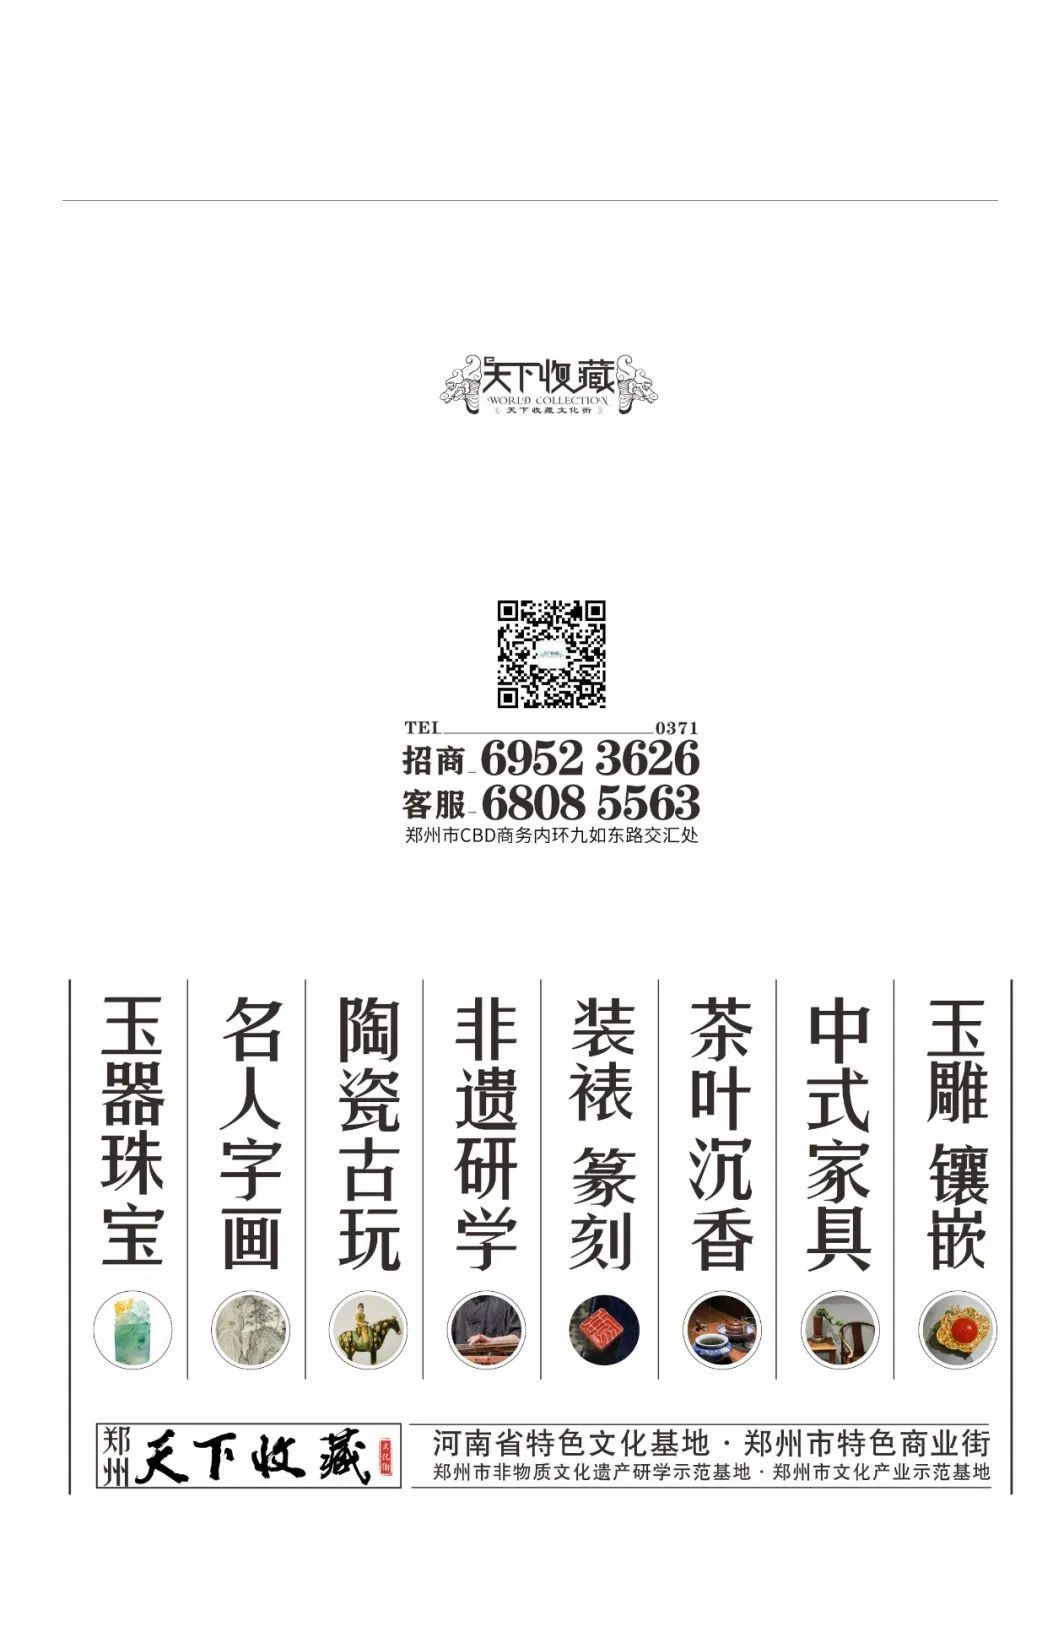 藏·展览丨纸笺传情，笔墨放歌——河南书法名家邀请展 12月24日开幕(图12)